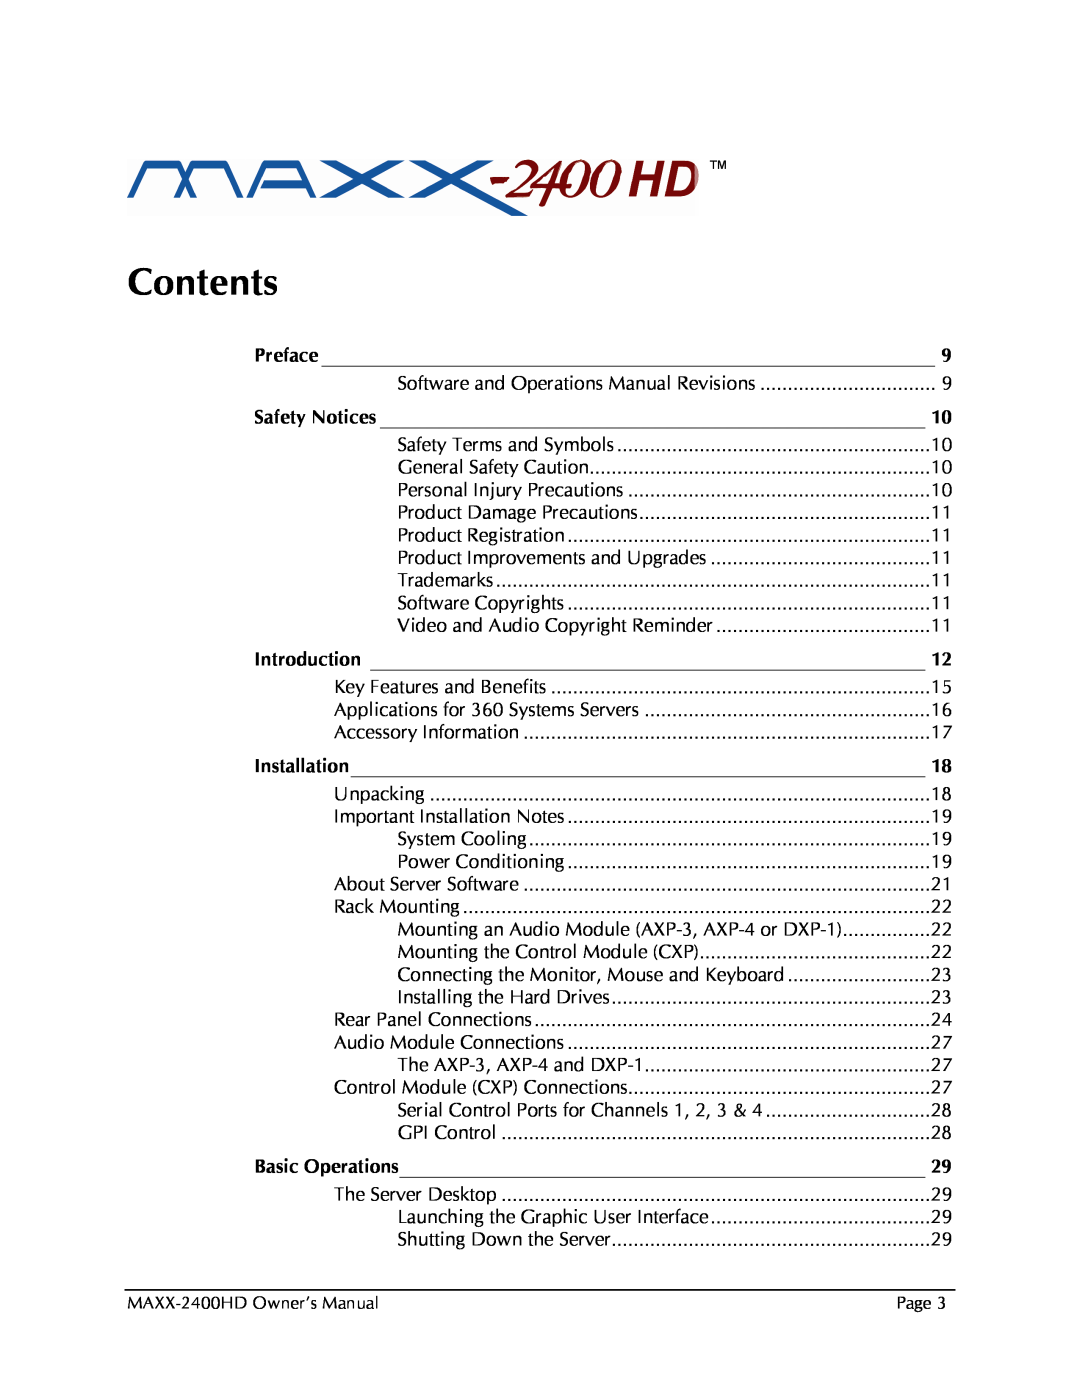 Maxxsonics MAXX-2400HD manual Contents 